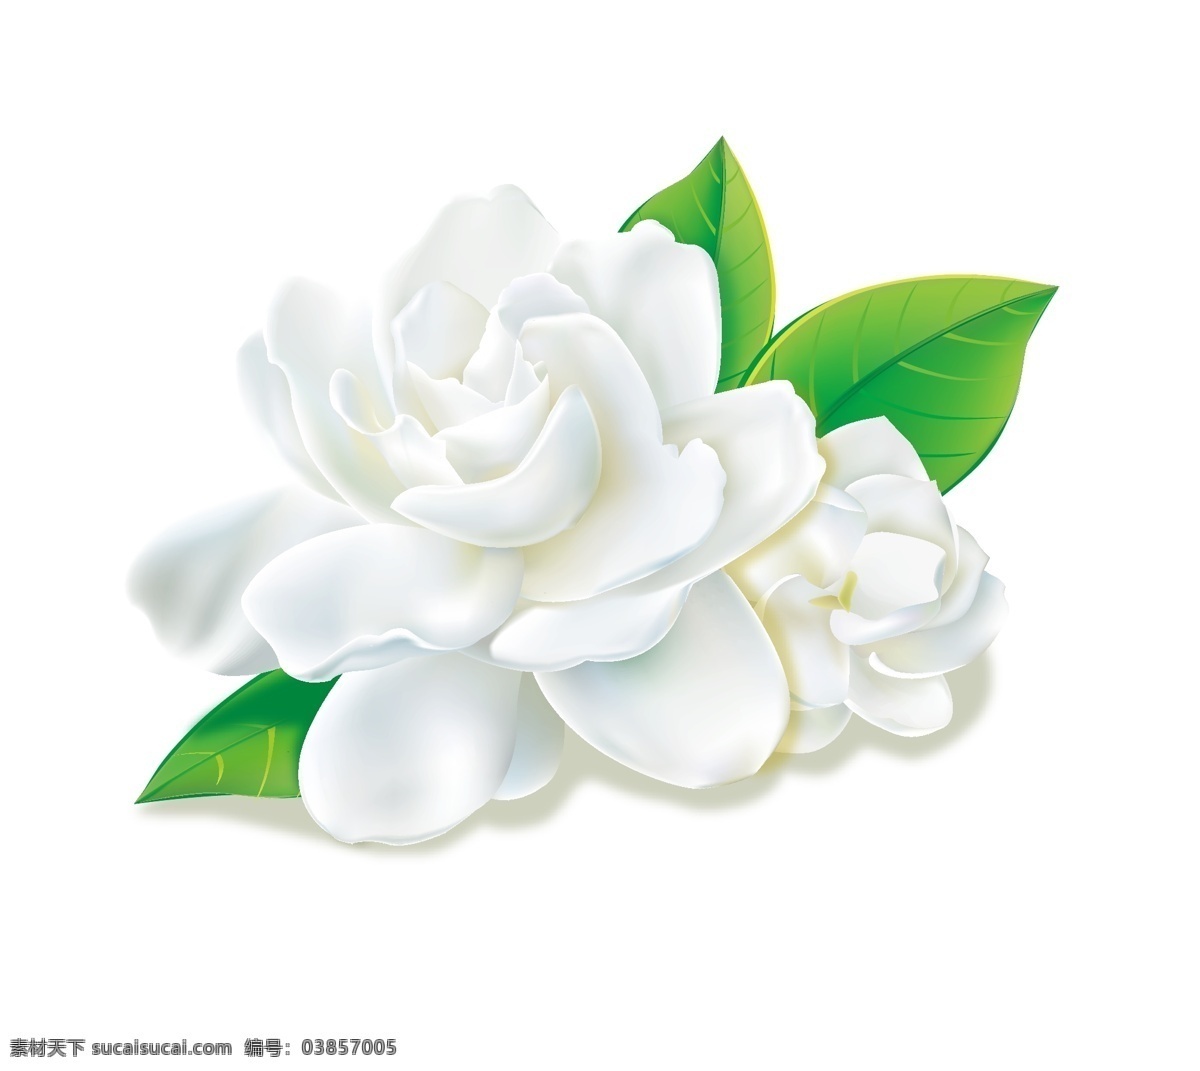 茉莉花 矢量图 花朵 植物 白色 生活百科